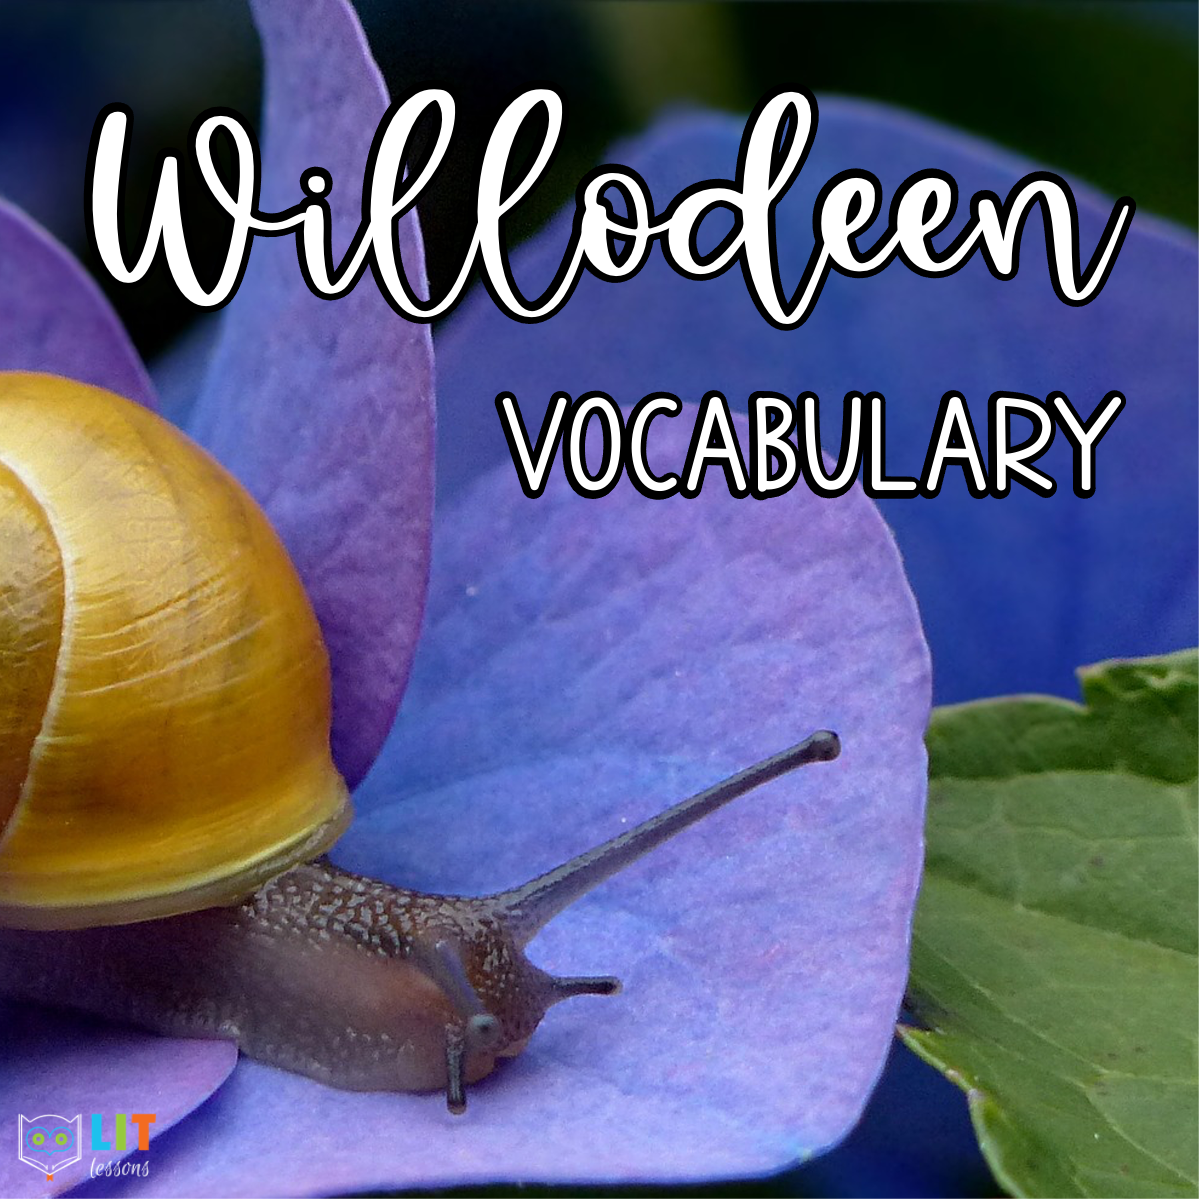 Willodeen Vocabulary